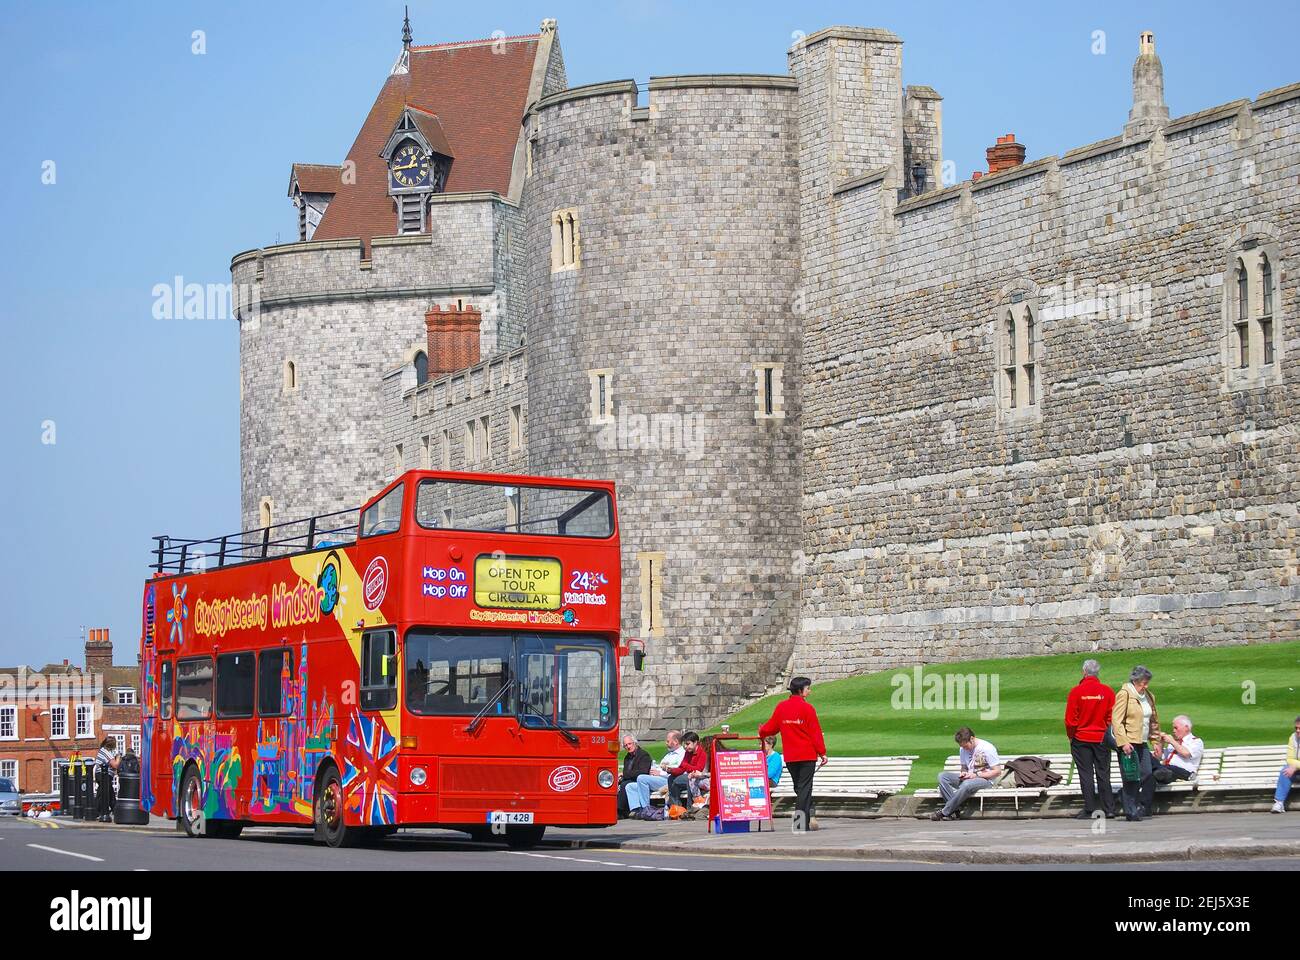 Bus de tourisme à côté du château de Windsor, High Street, Windsor, Berkshire, Angleterre, Royaume-Uni Banque D'Images